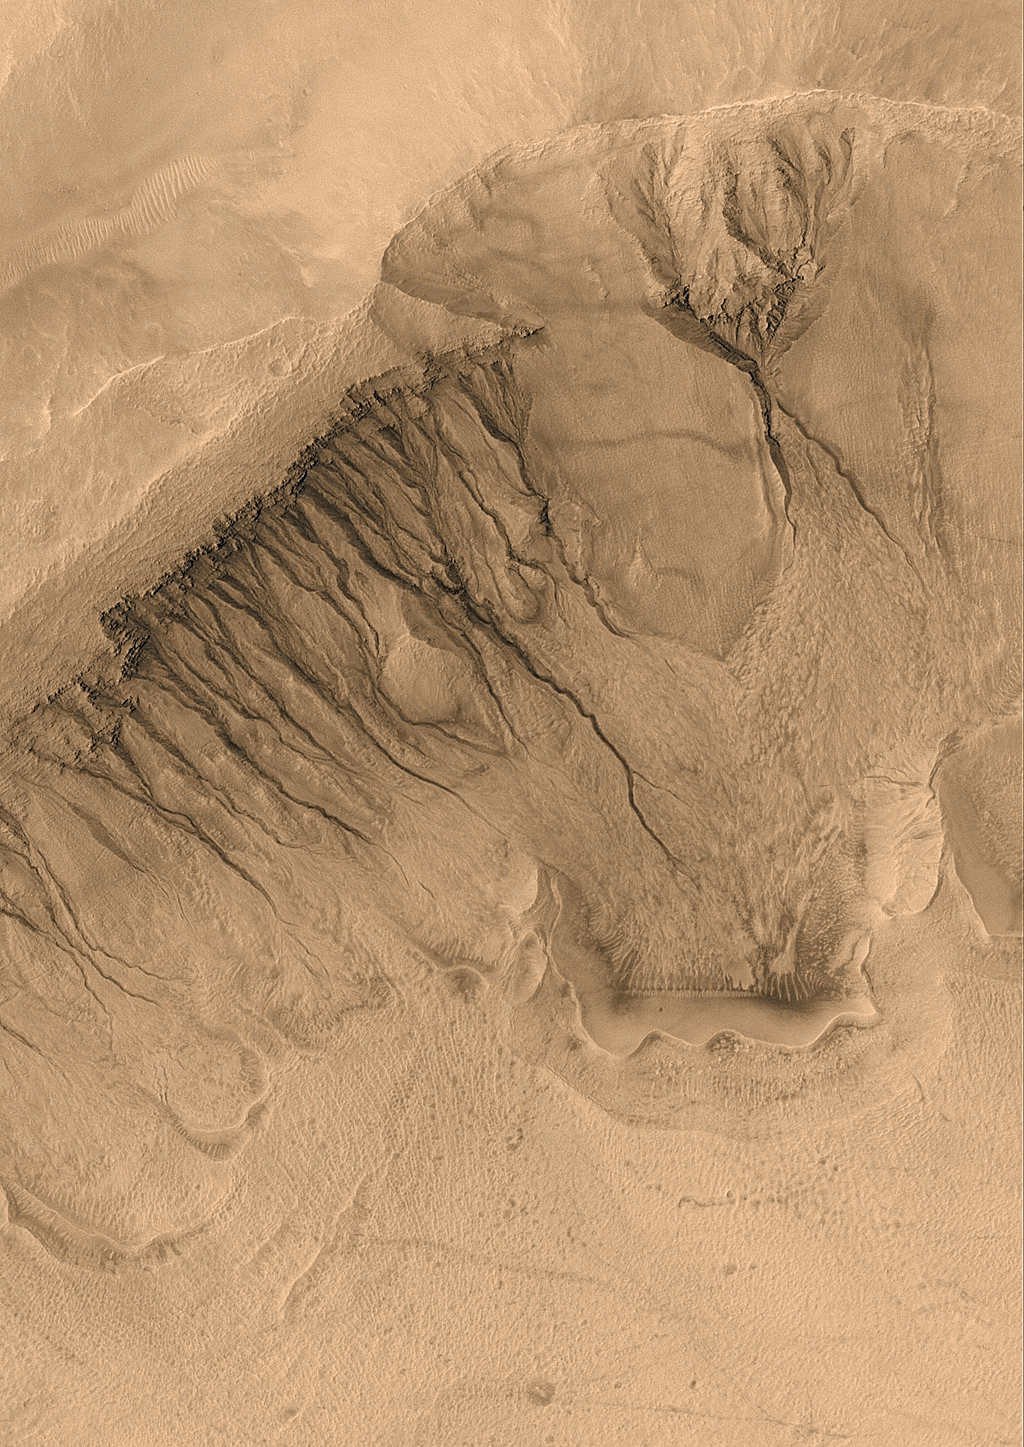 Neobychnye ovragi i kanaly na Marse